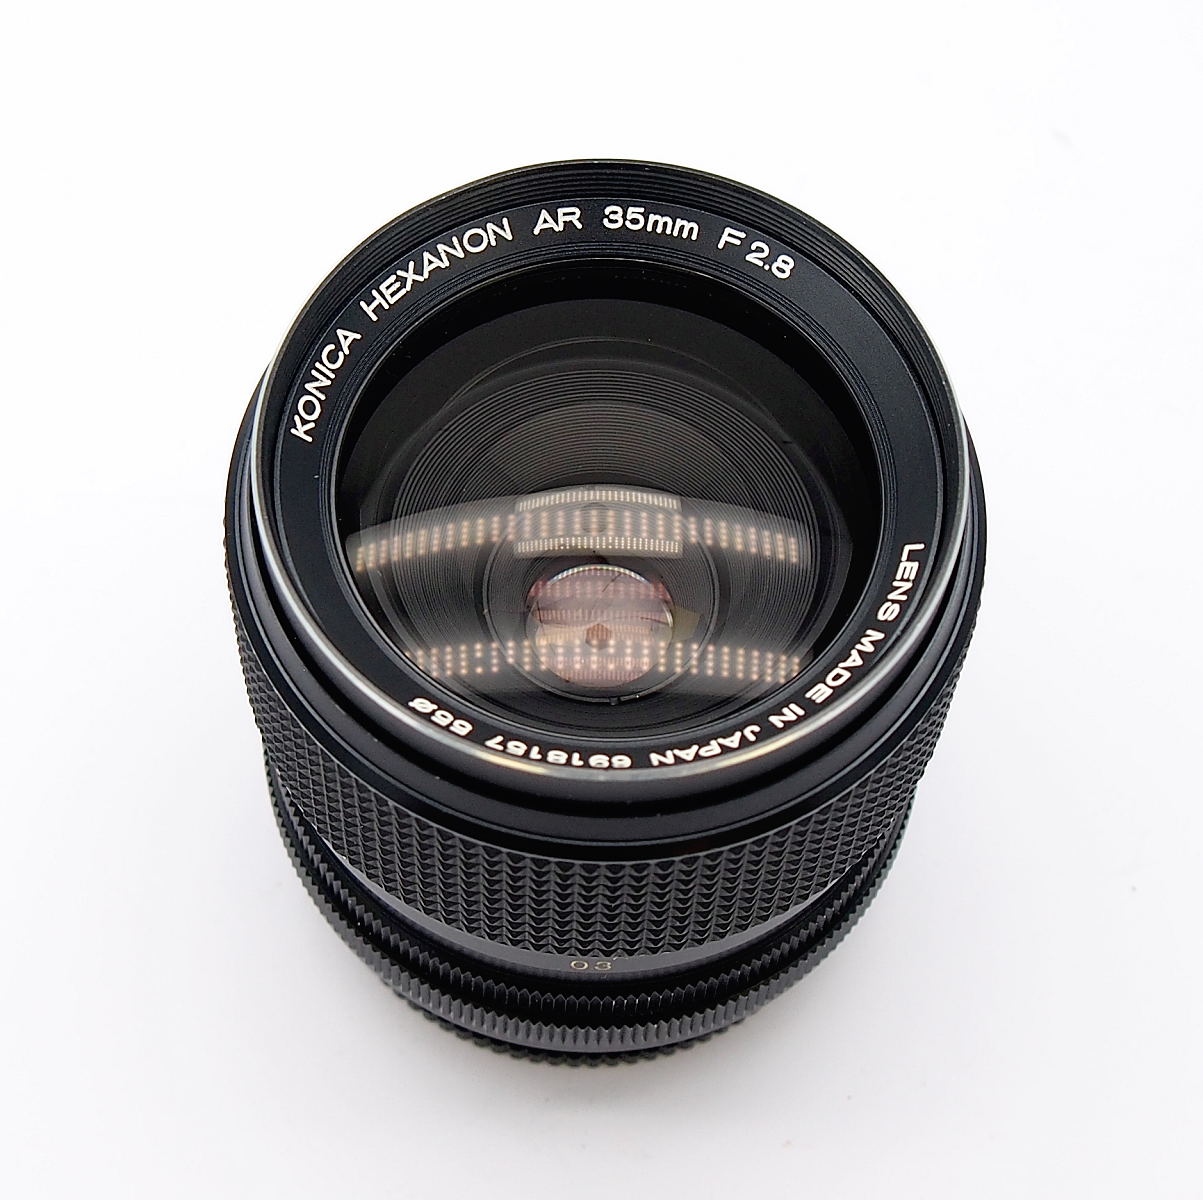 Konica Hexanon AR 35mm F2.8 Lens, Cased #9238